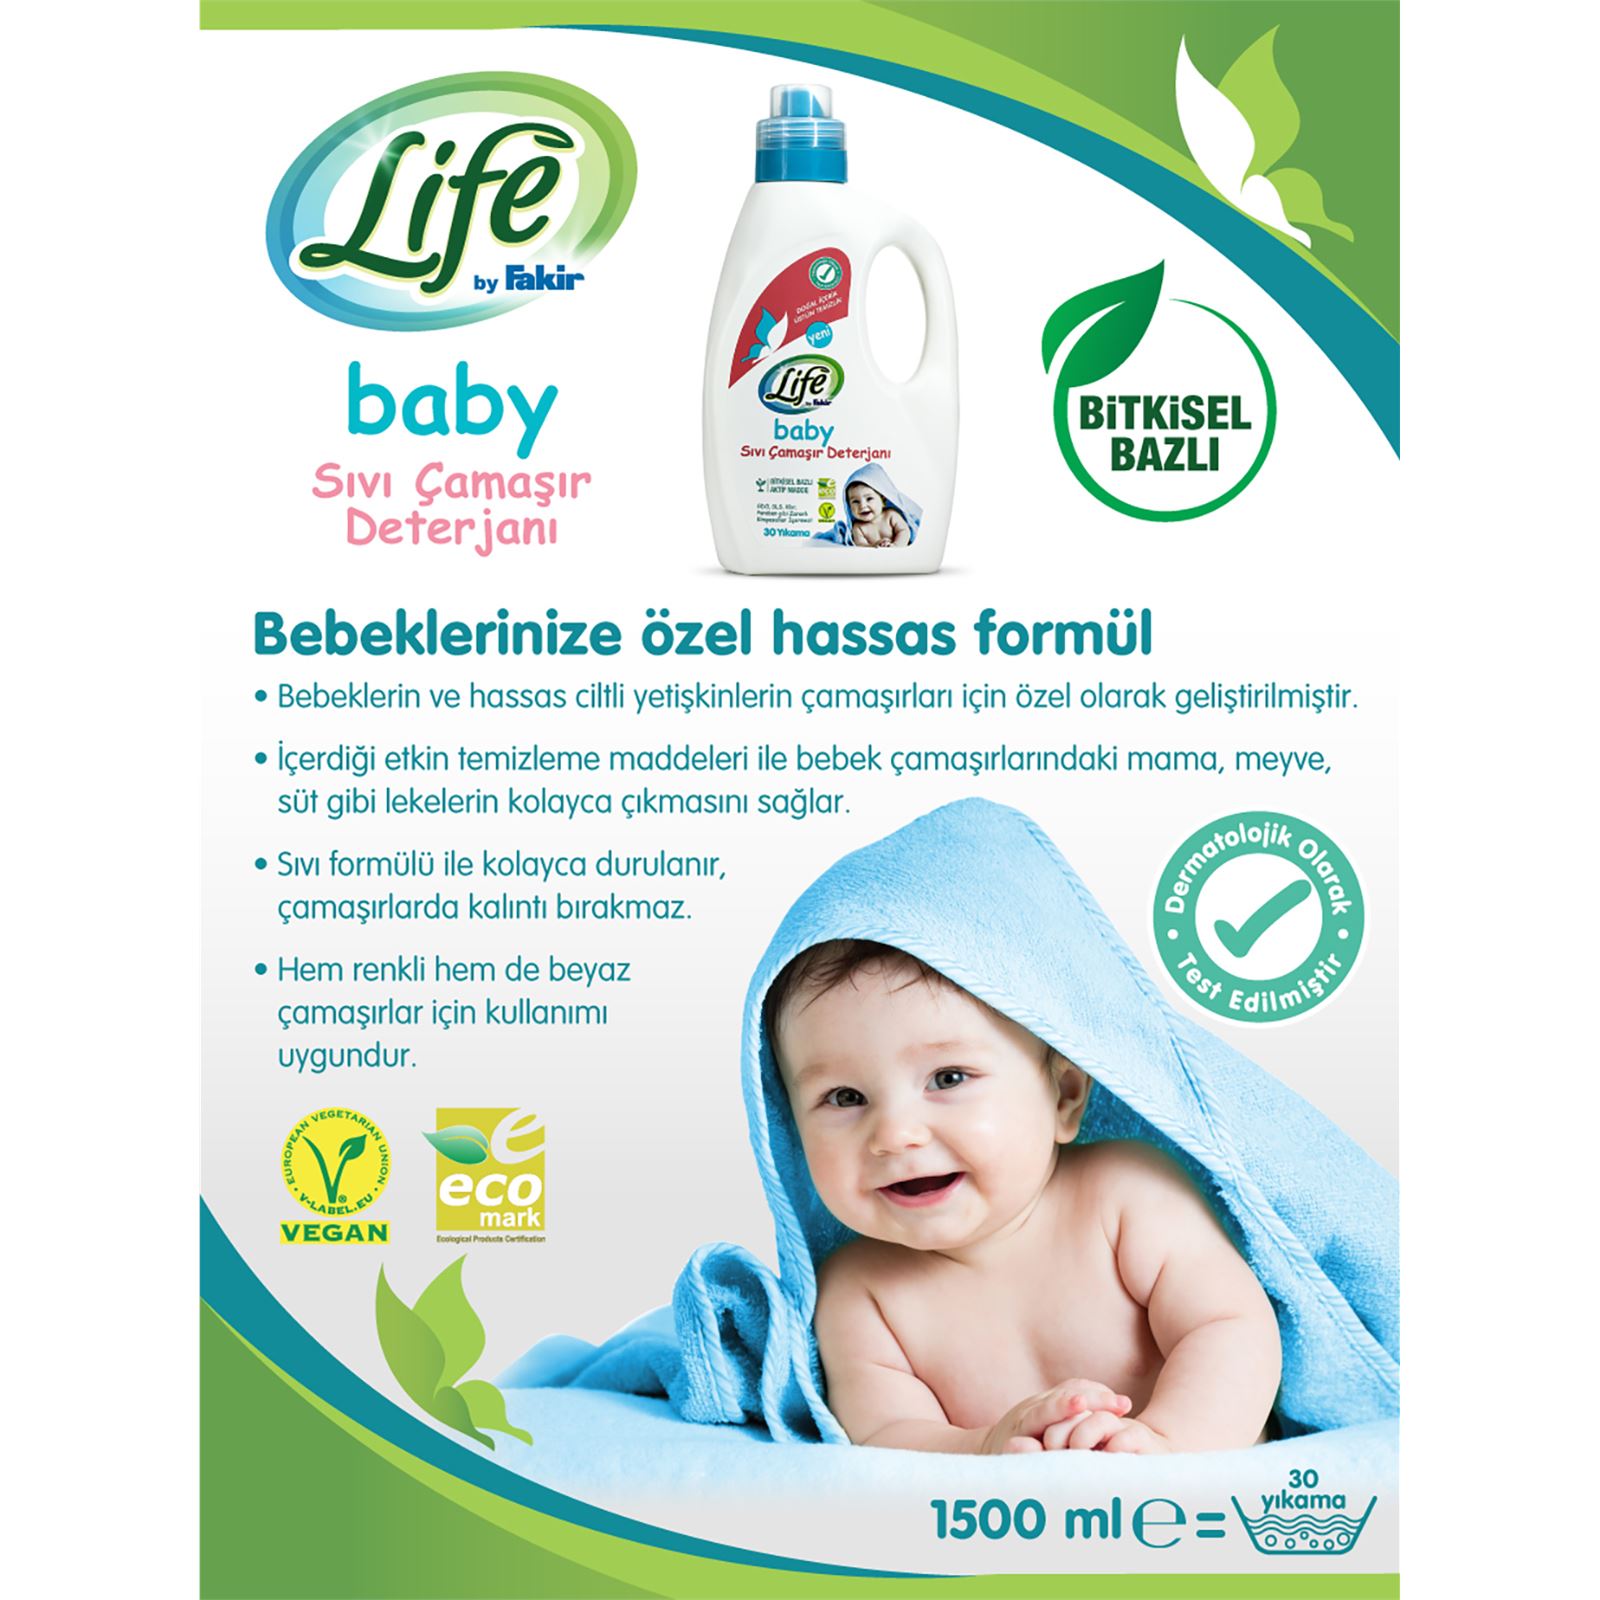 Life by Fakir Bitkisel Bazlı Bebek Sıvı Çamaşır Deterjanı 1500 ml